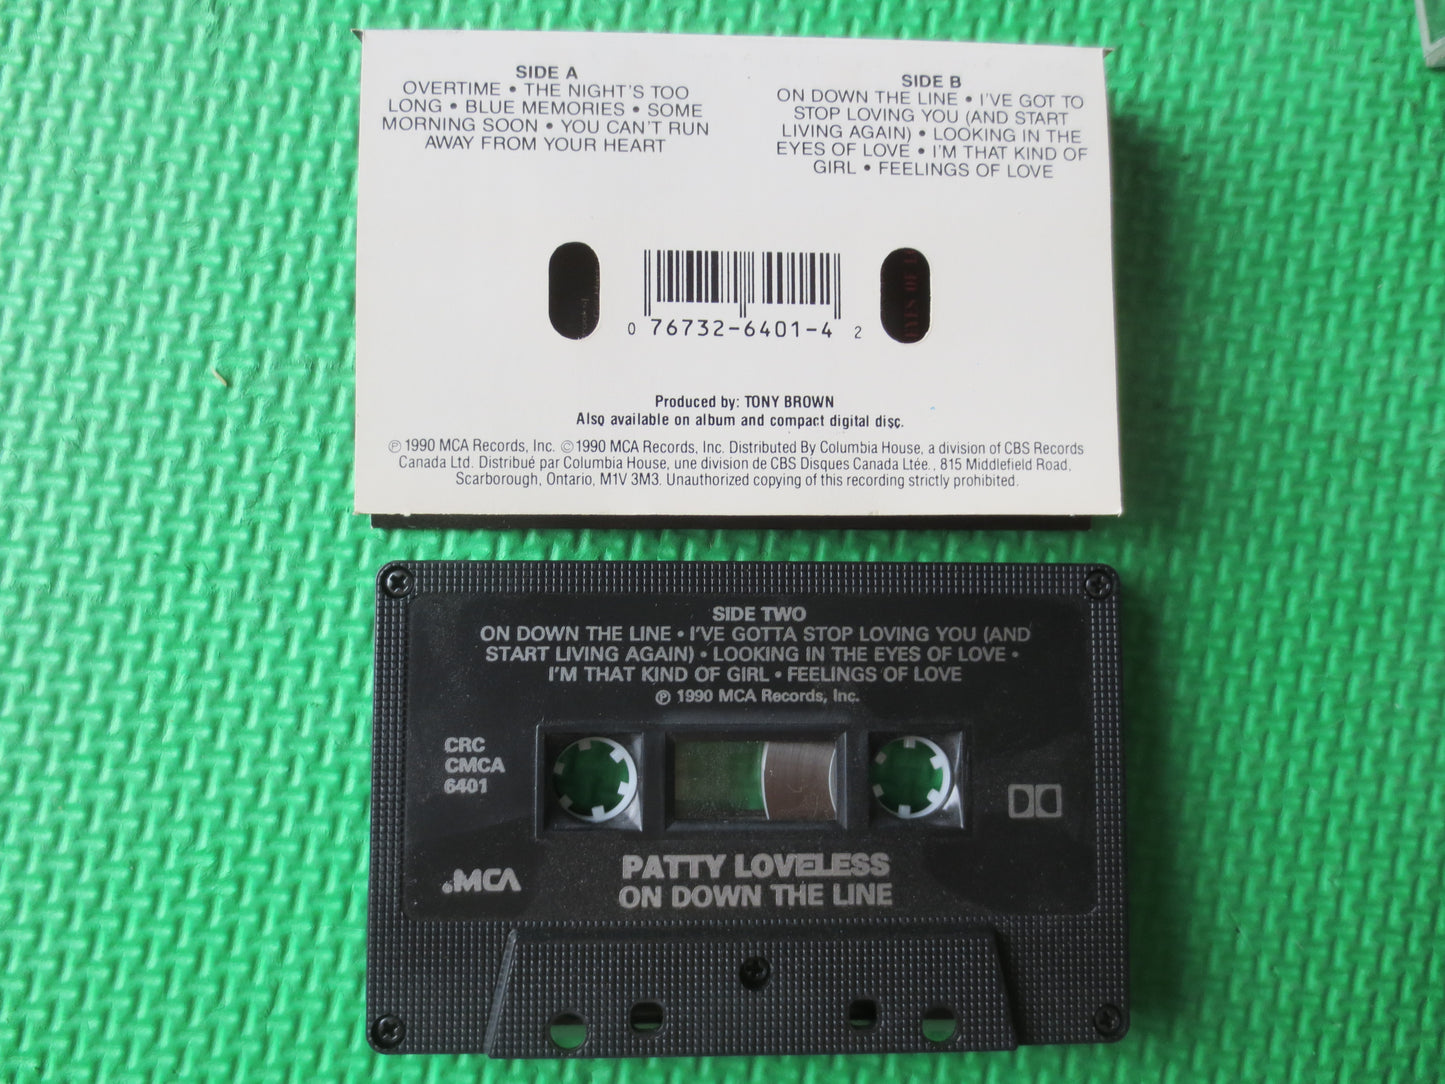 PATTY LOVELESS, On DOWN the Line, Patty Loveless Tape, Patty Loveless Album, Tapes, Tape Cassette, Cassette, 1990 Cassette